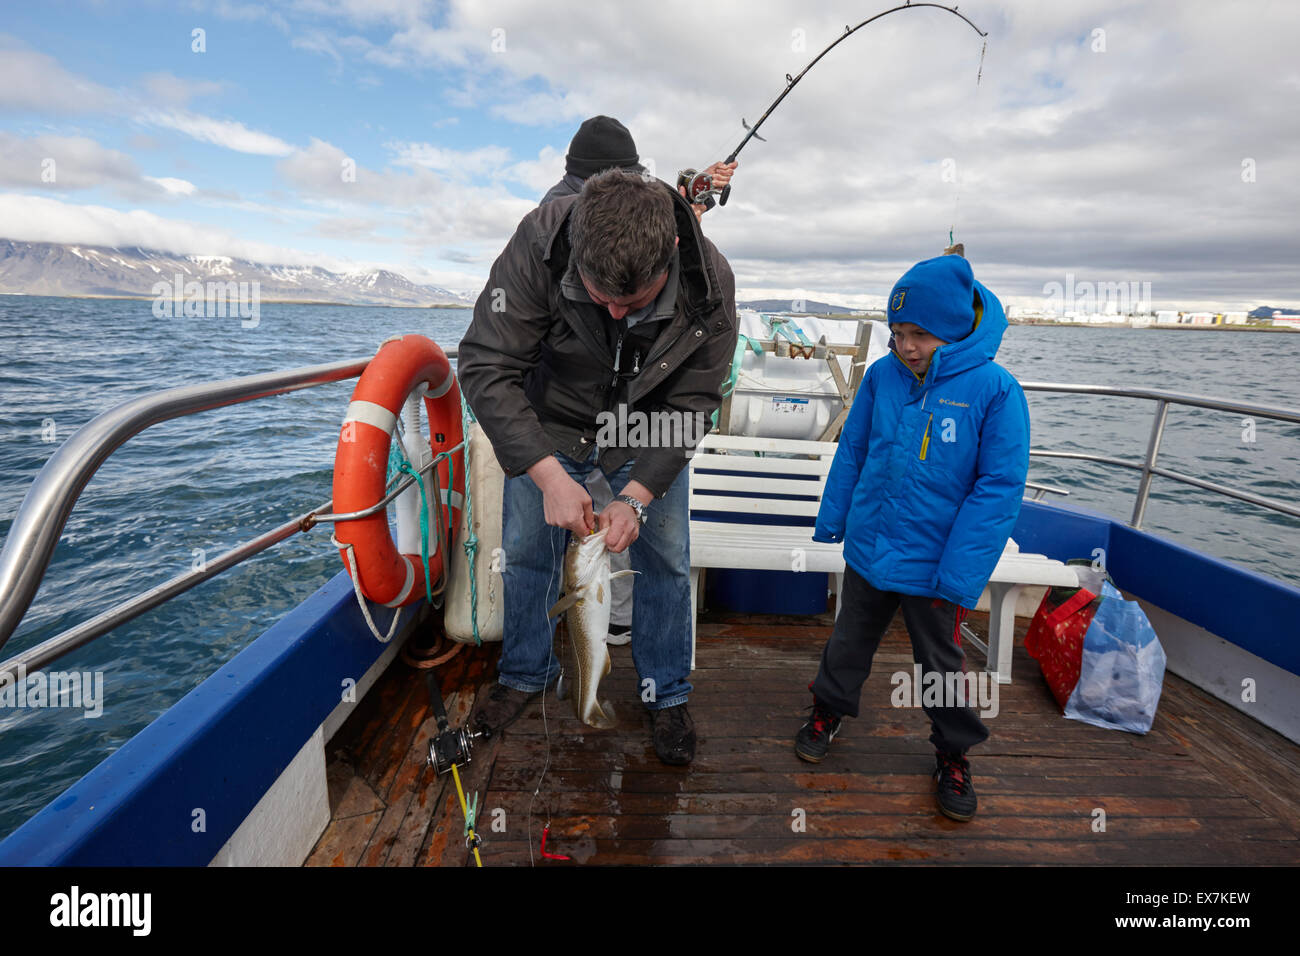 Les hommes pêchent seafishing avec jeune garçon sur un bateau charter Reykjavik Islande Banque D'Images